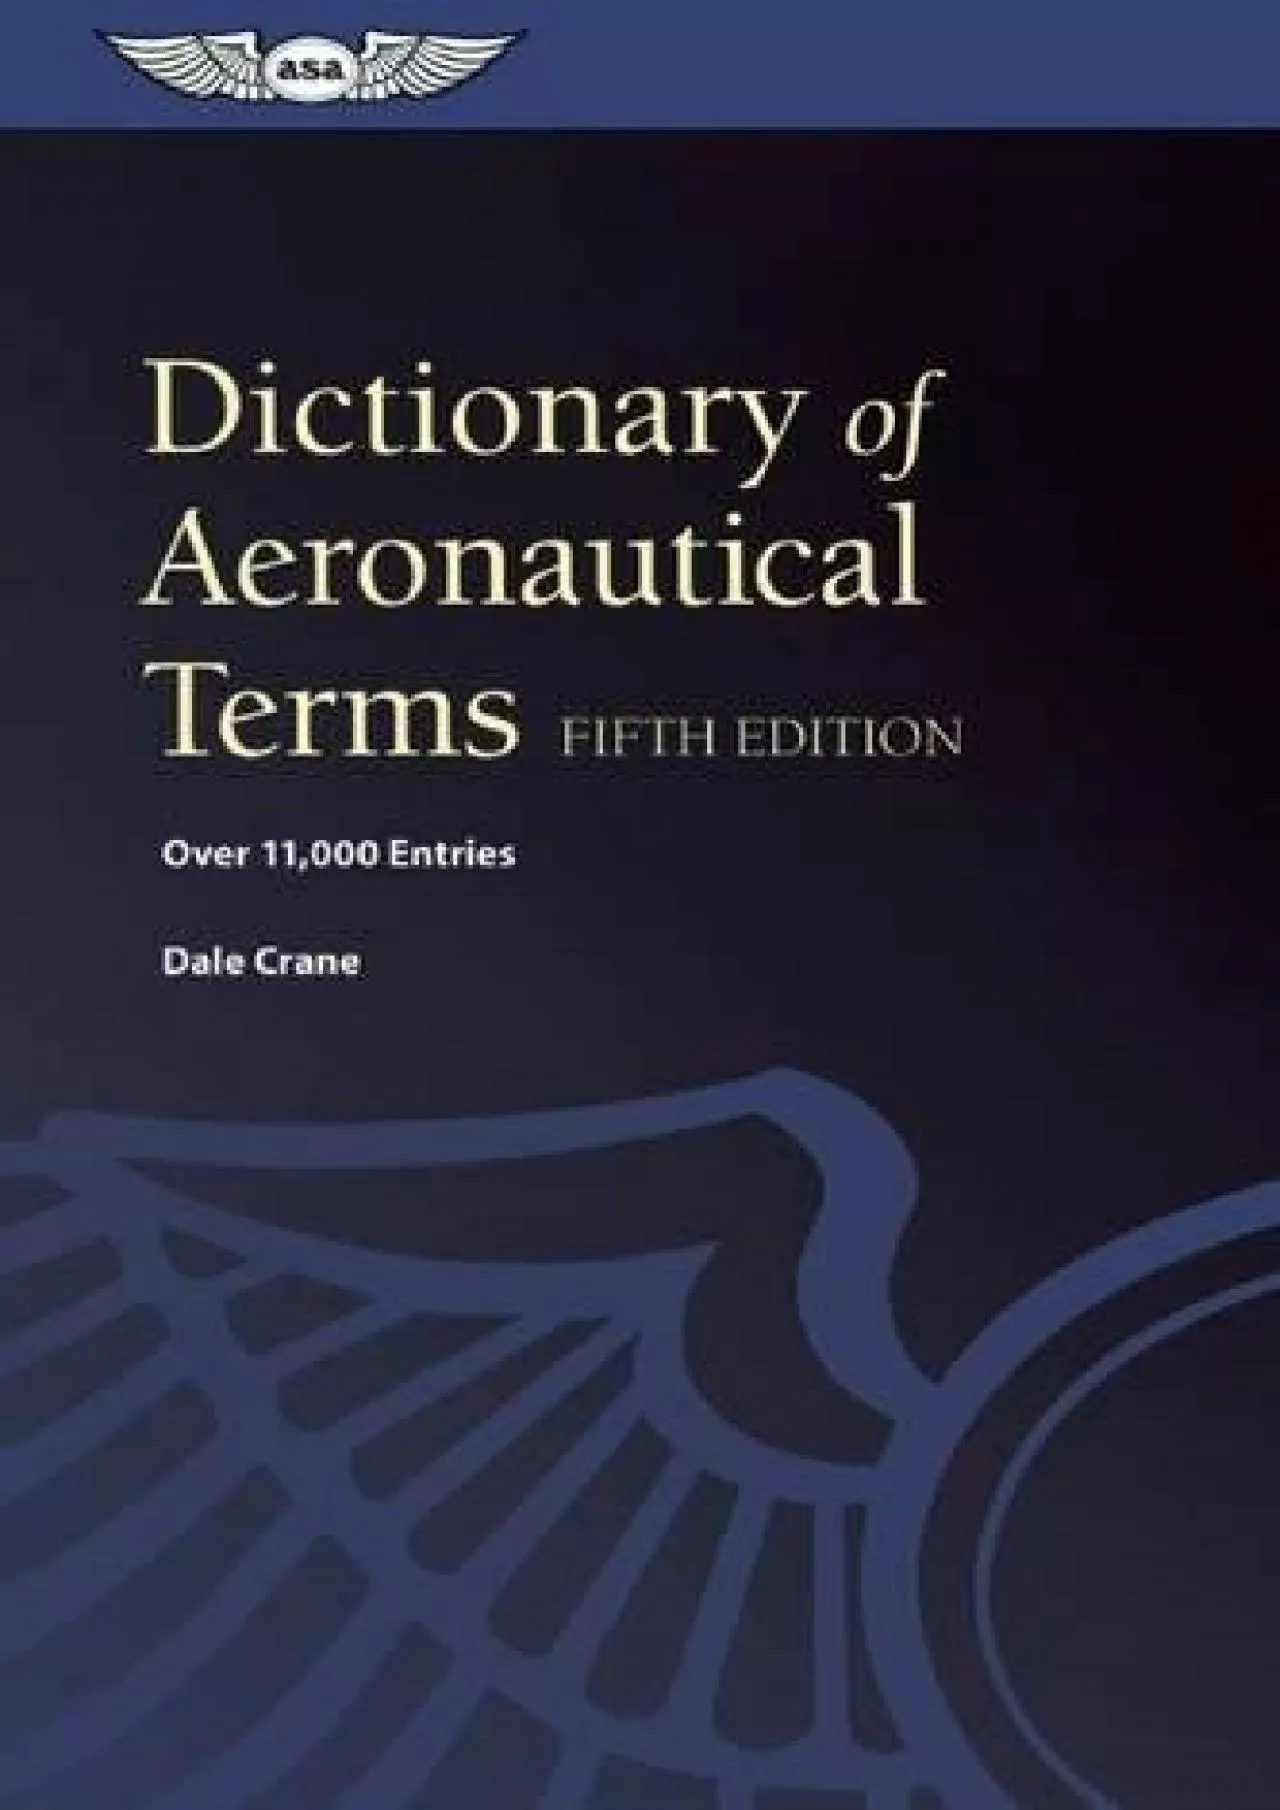 (BOOS)-Dictionary of Aeronautical Terms (ePub): Over 11,000 Entries